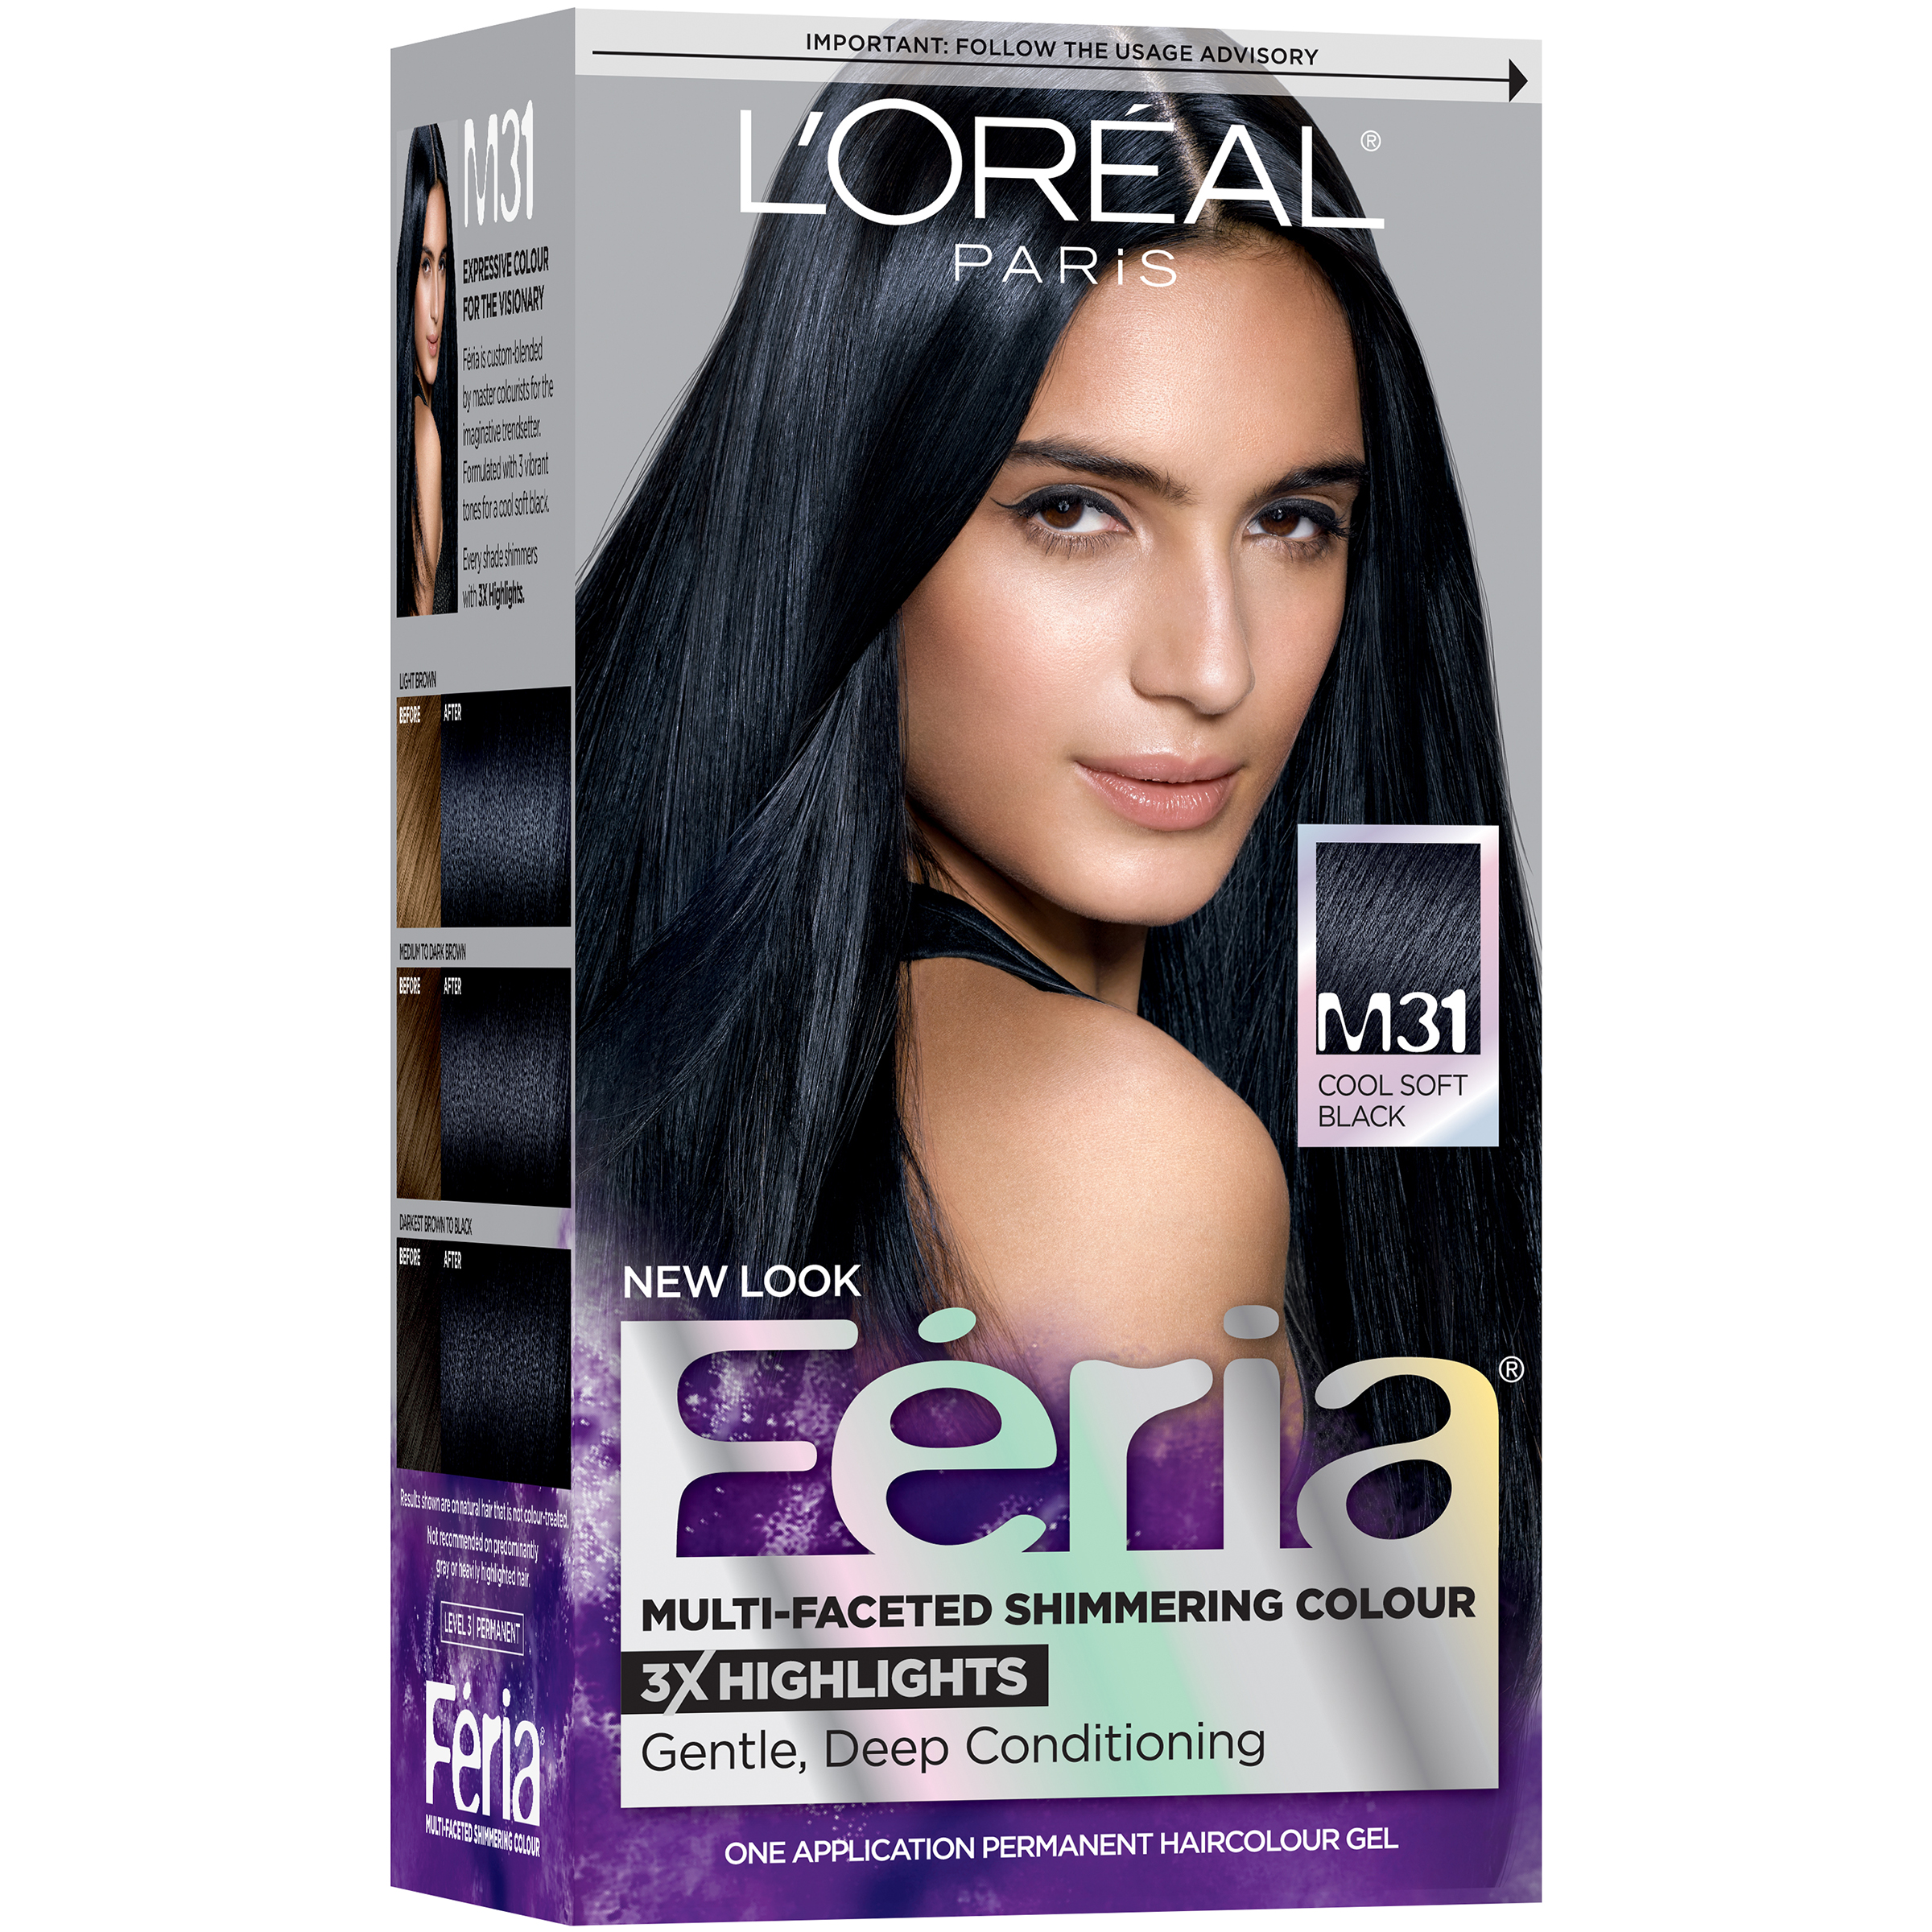 L'Oreal Paris Feria® Multi-Faceted Shimmering Colour Hair Color